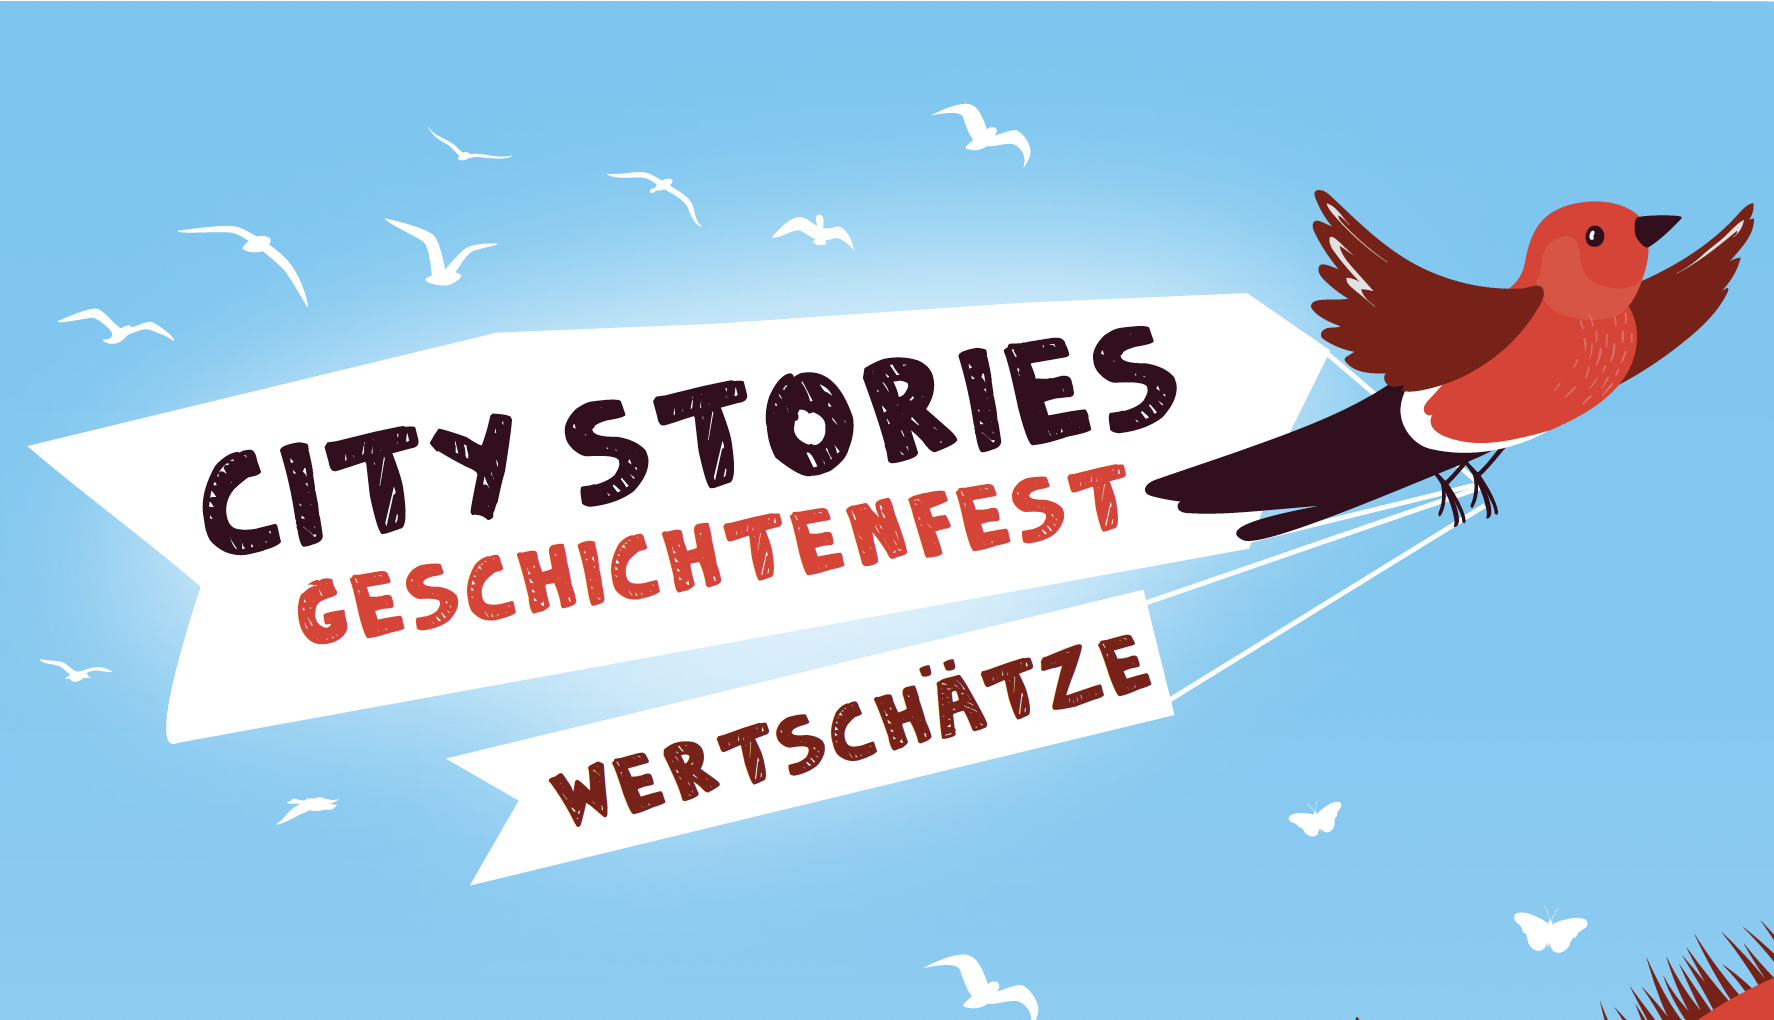 City Stories Geschichtenfest – WERTSCHÄTZE